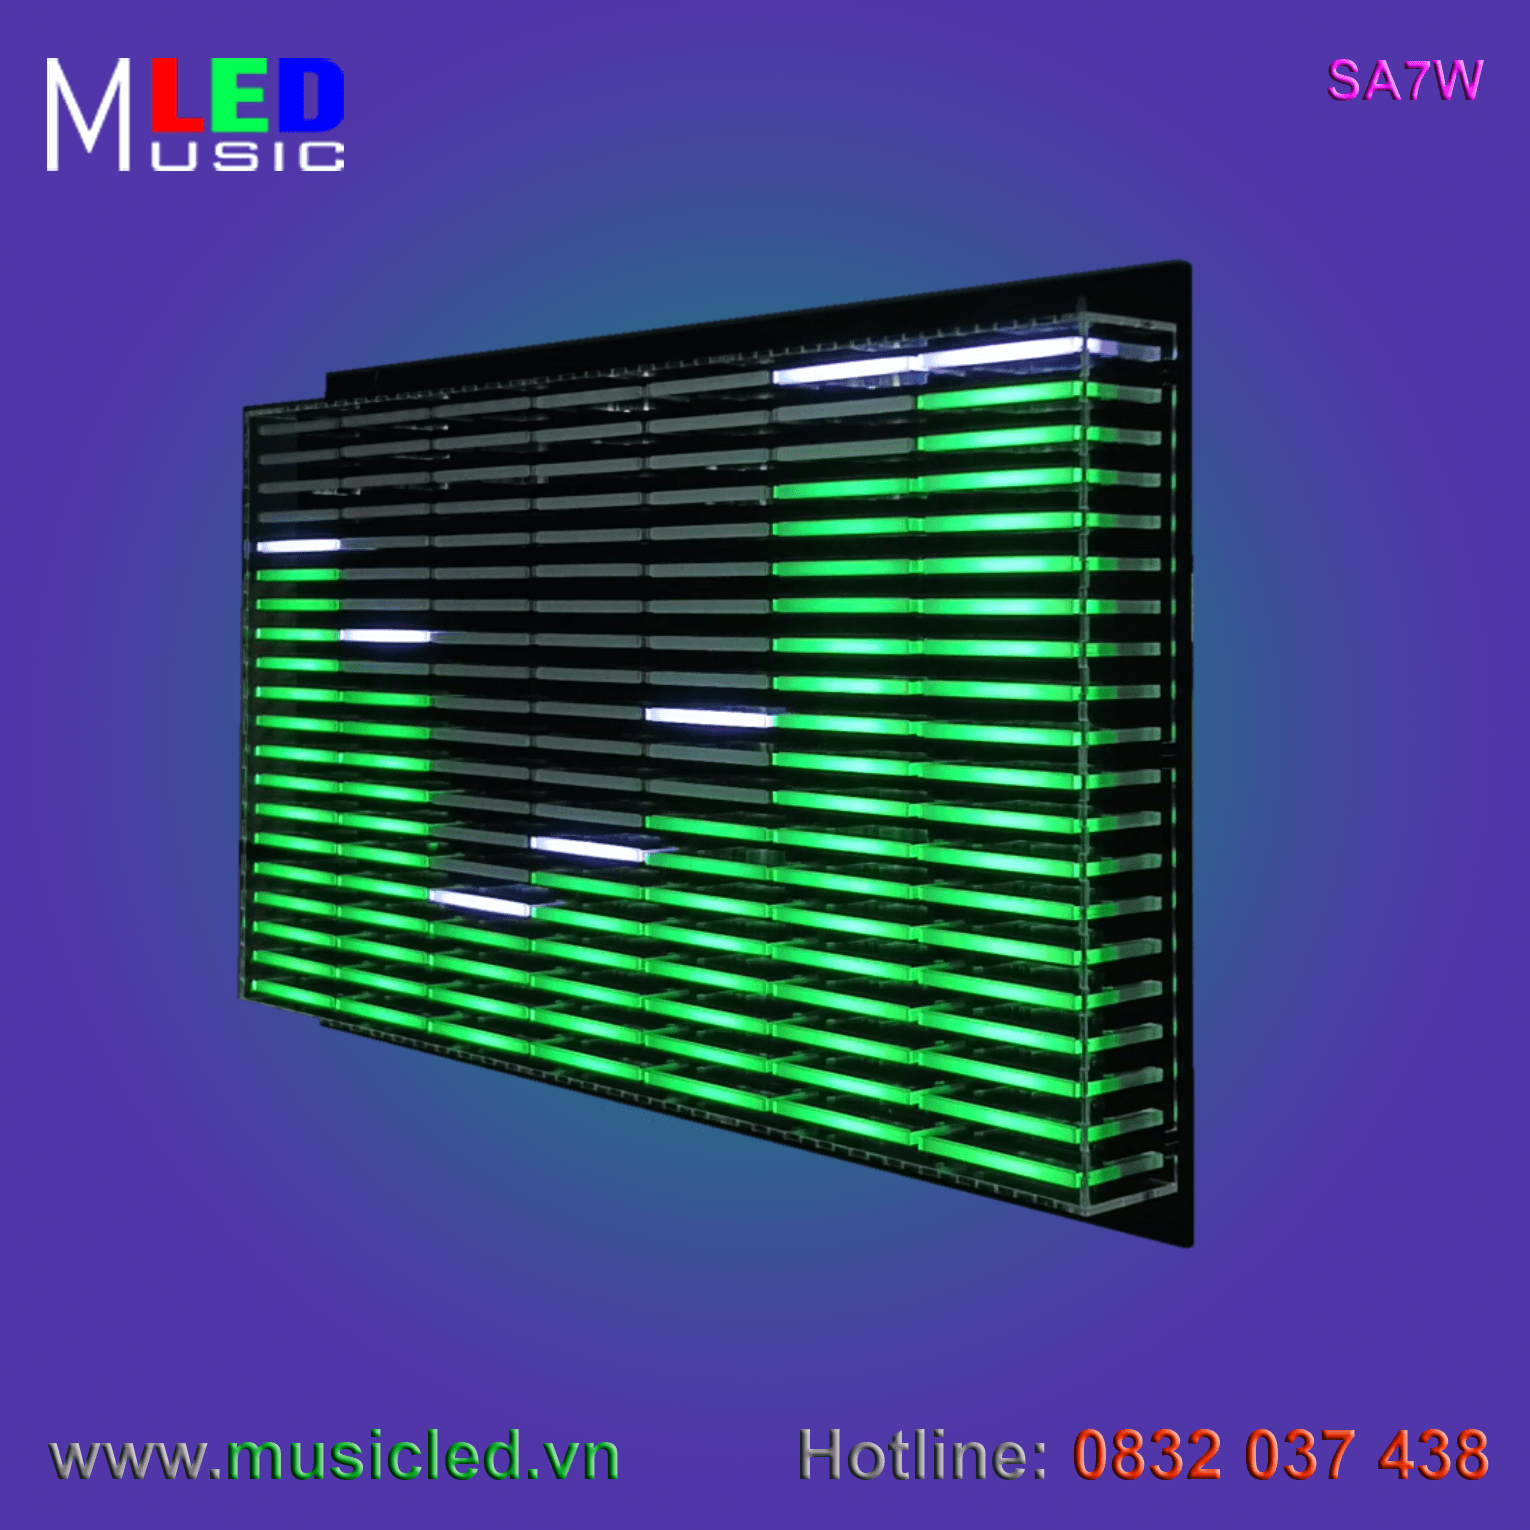 Dàn đèn Music LED nháy theo tần số nhạc 7 cột treo tường (SA7W)